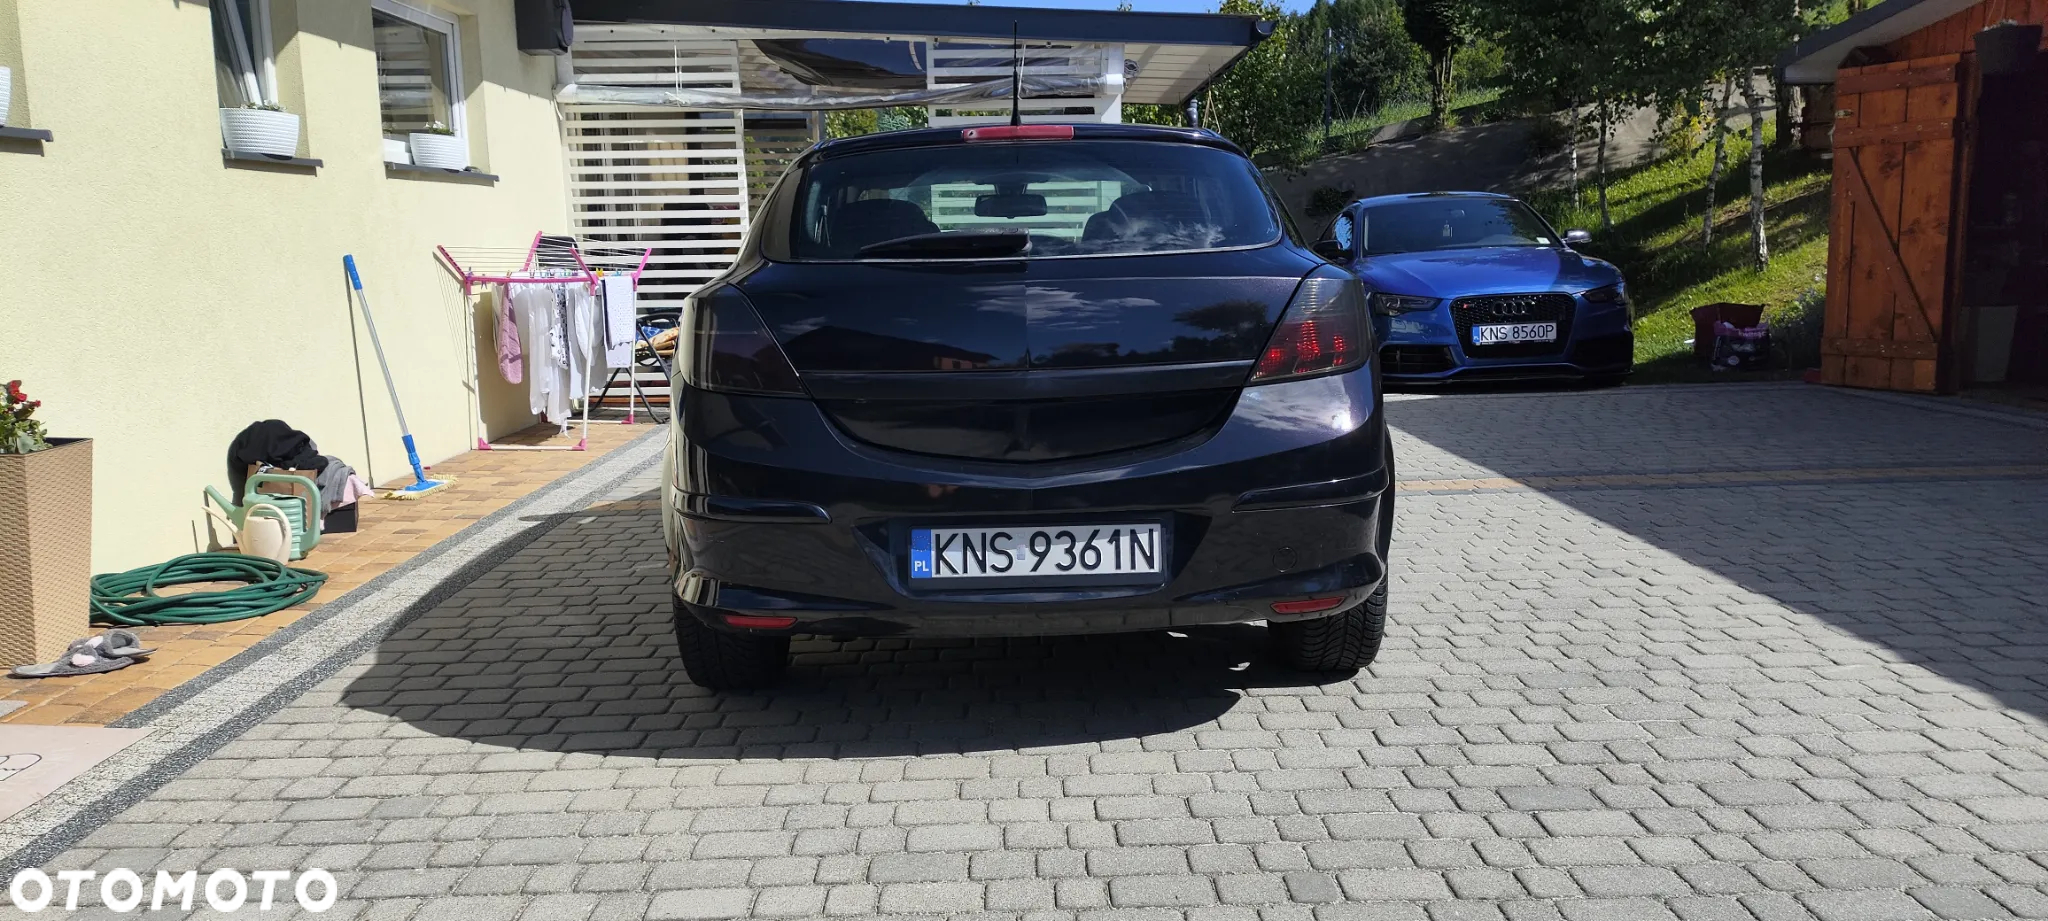 Opel Astra III GTC 1.7 CDTI Cosmo - 4